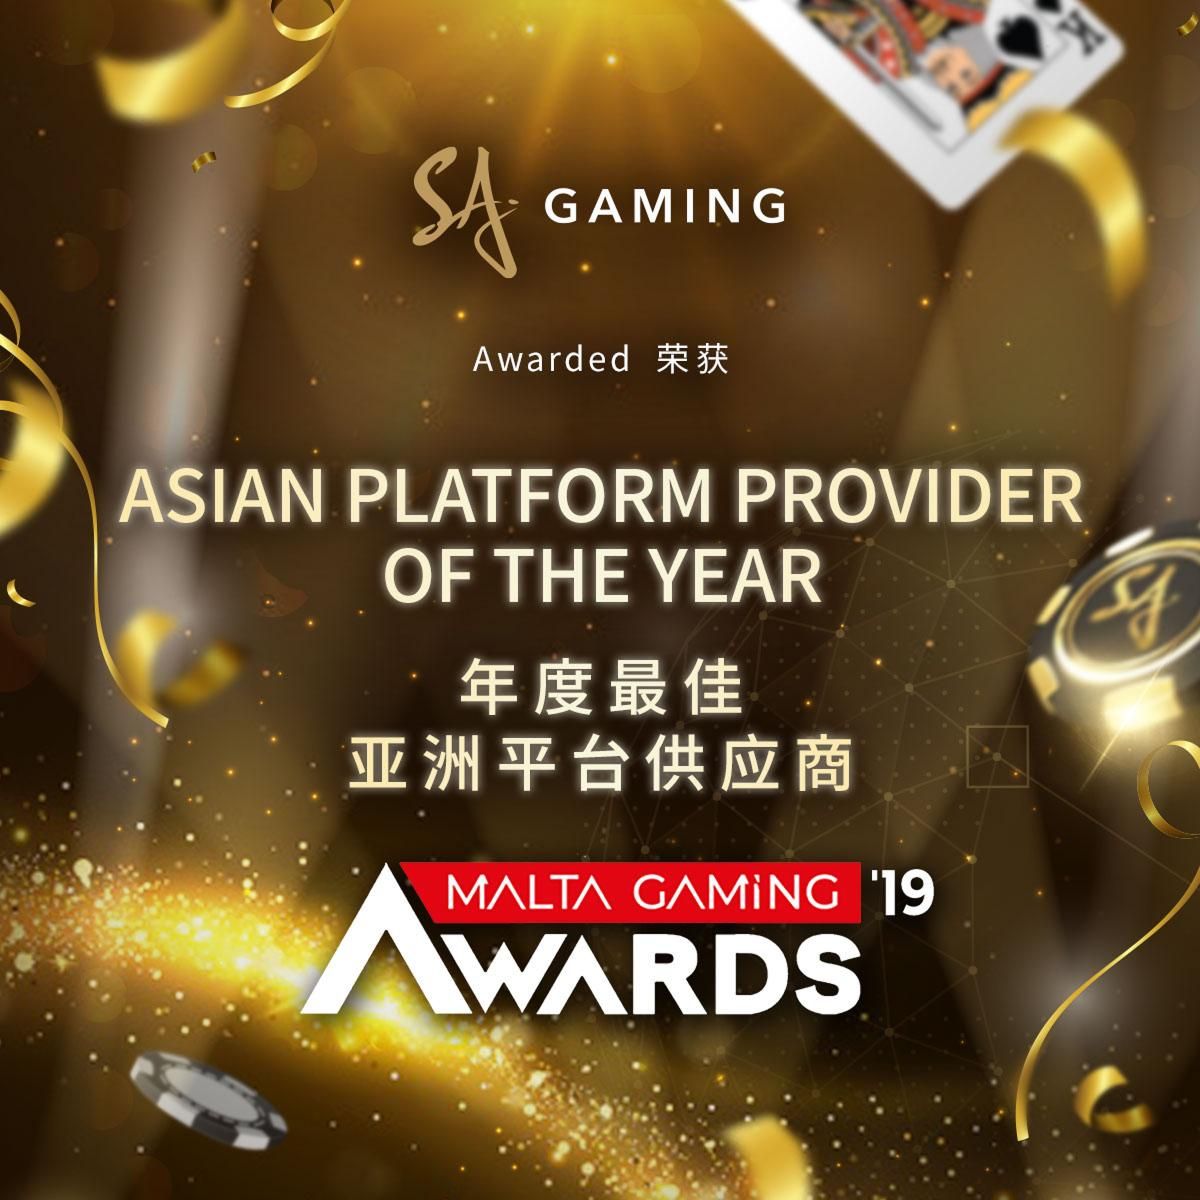 SA Gaming awarded “Asian Platform Provider of the Year” at Malta Gaming Awards 2019